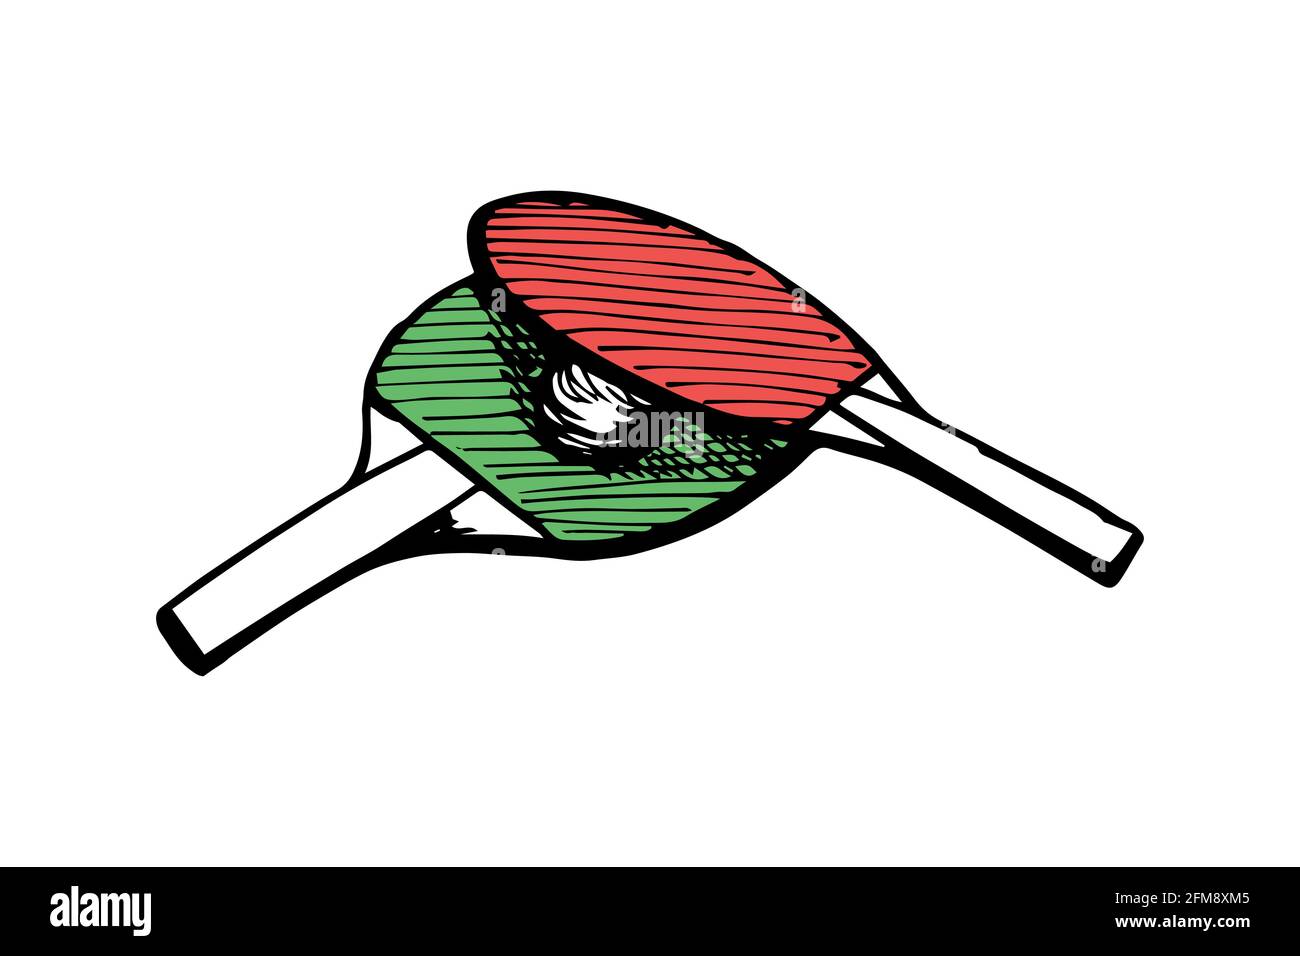 Ping-pong vert et rouge raquettes et balle dessin main esquisse de contour.Équipement de tennis de table.Concept du logo des pagaies de jeu de ping-pong.Vector eps encre noire Doodle illustration isolée sur fond blanc Illustration de Vecteur